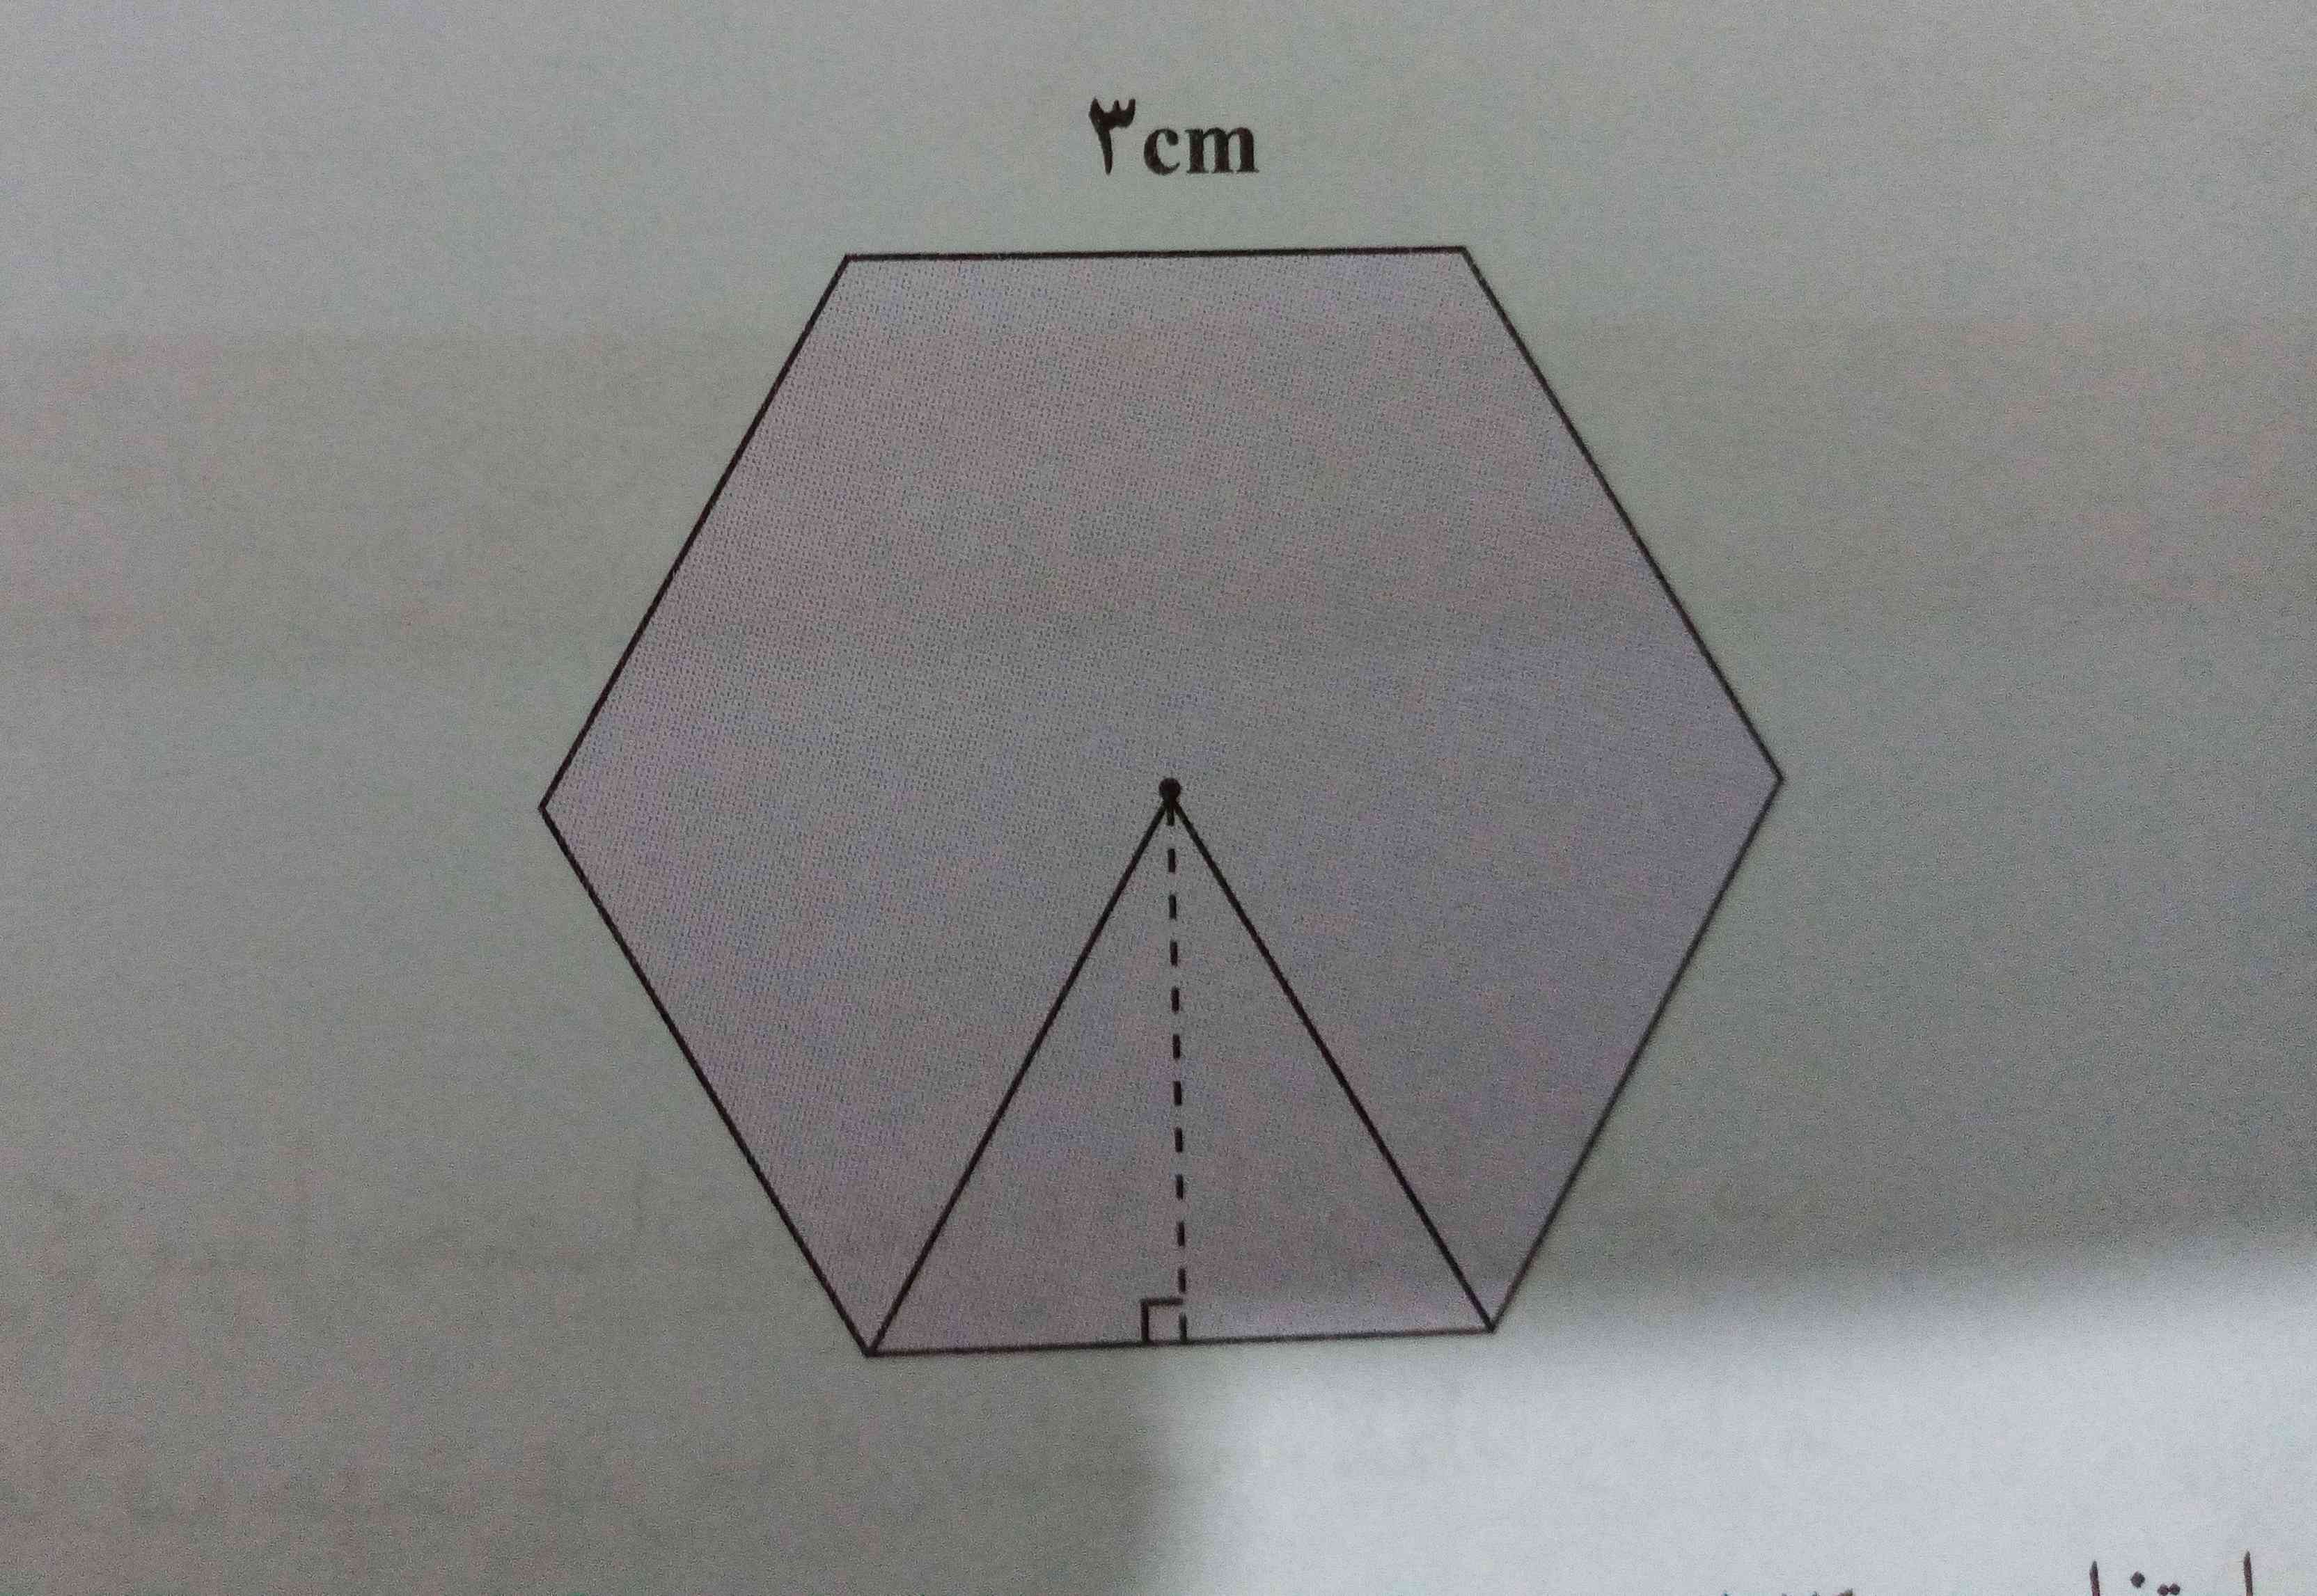 مساحت شش ضلعی منتظم را بدست آورید. 